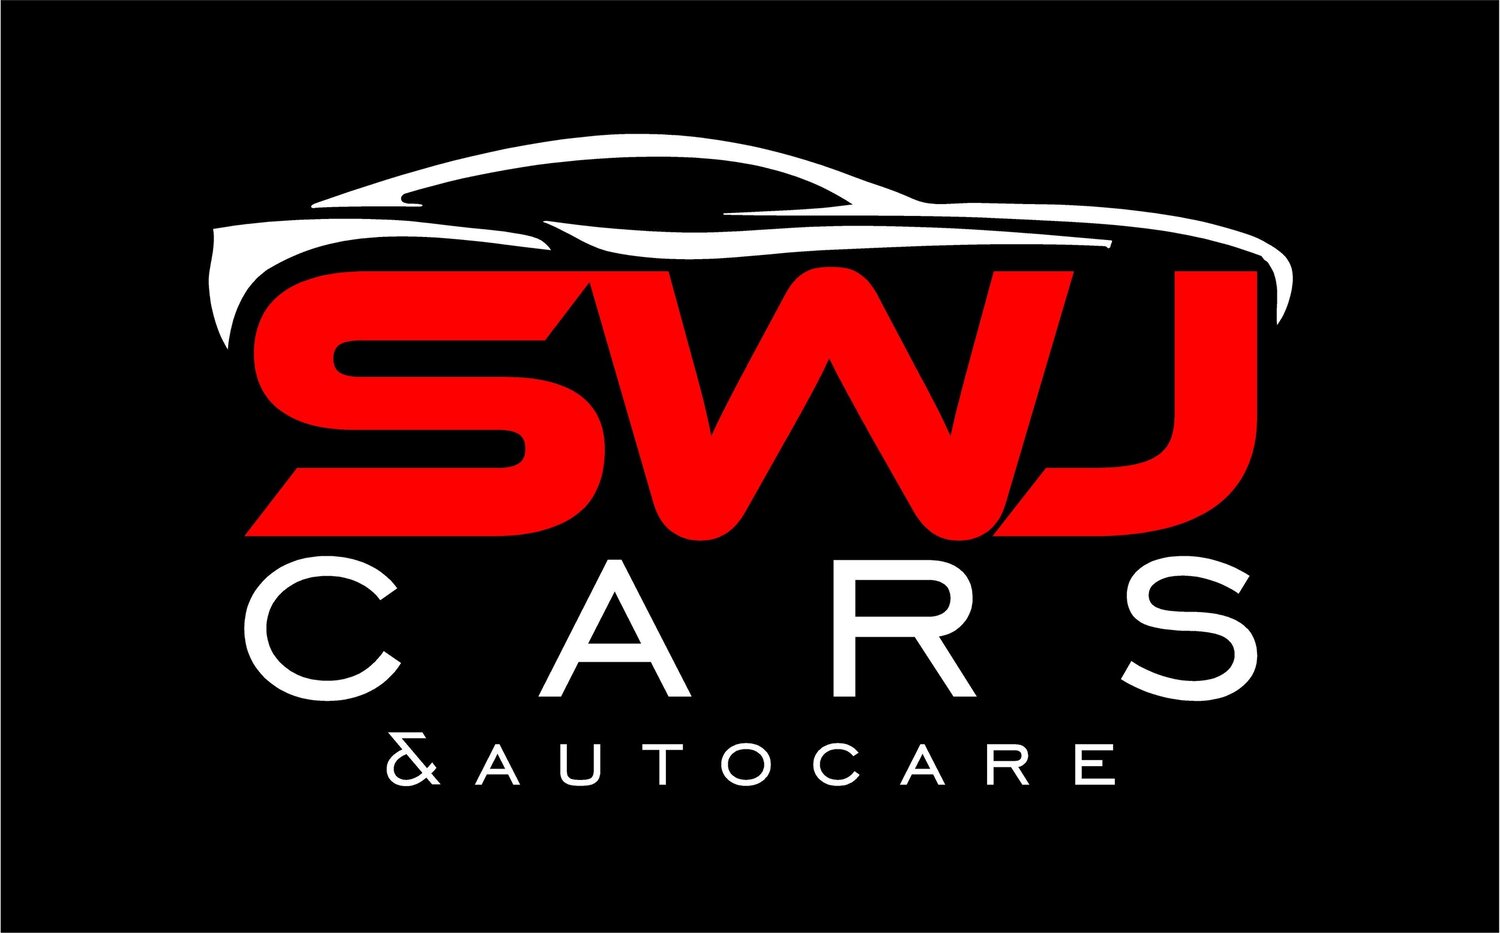 SWJ Cars & Autocare